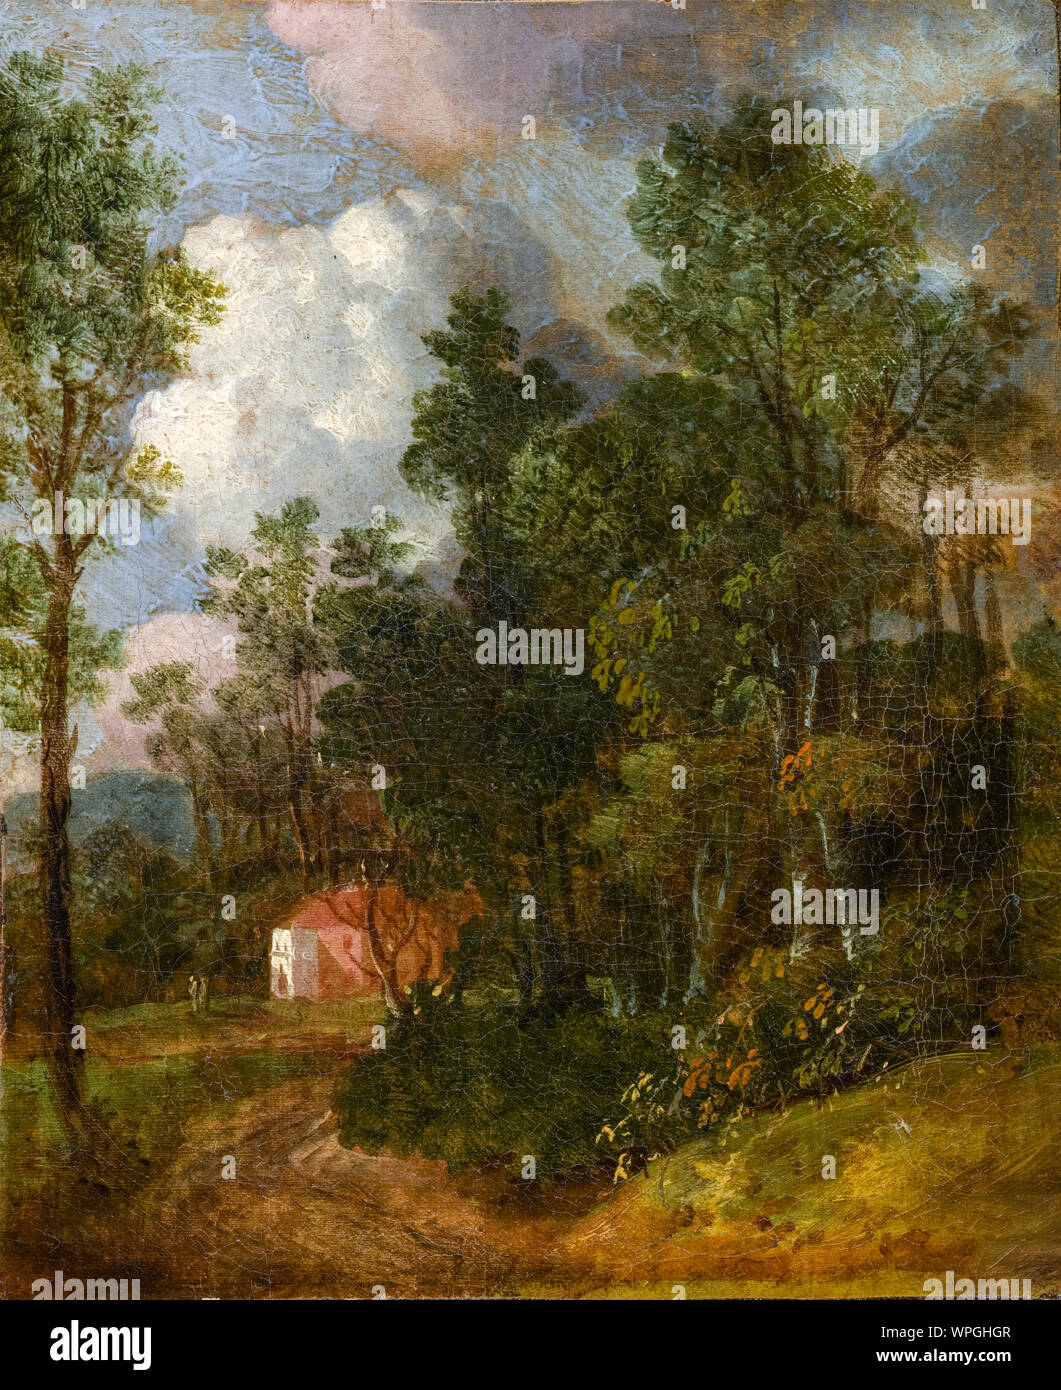 Thomas Gainsborough, peinture de paysage, un paysage boisé avec des chiffres par une maison, vers 1752 Banque D'Images